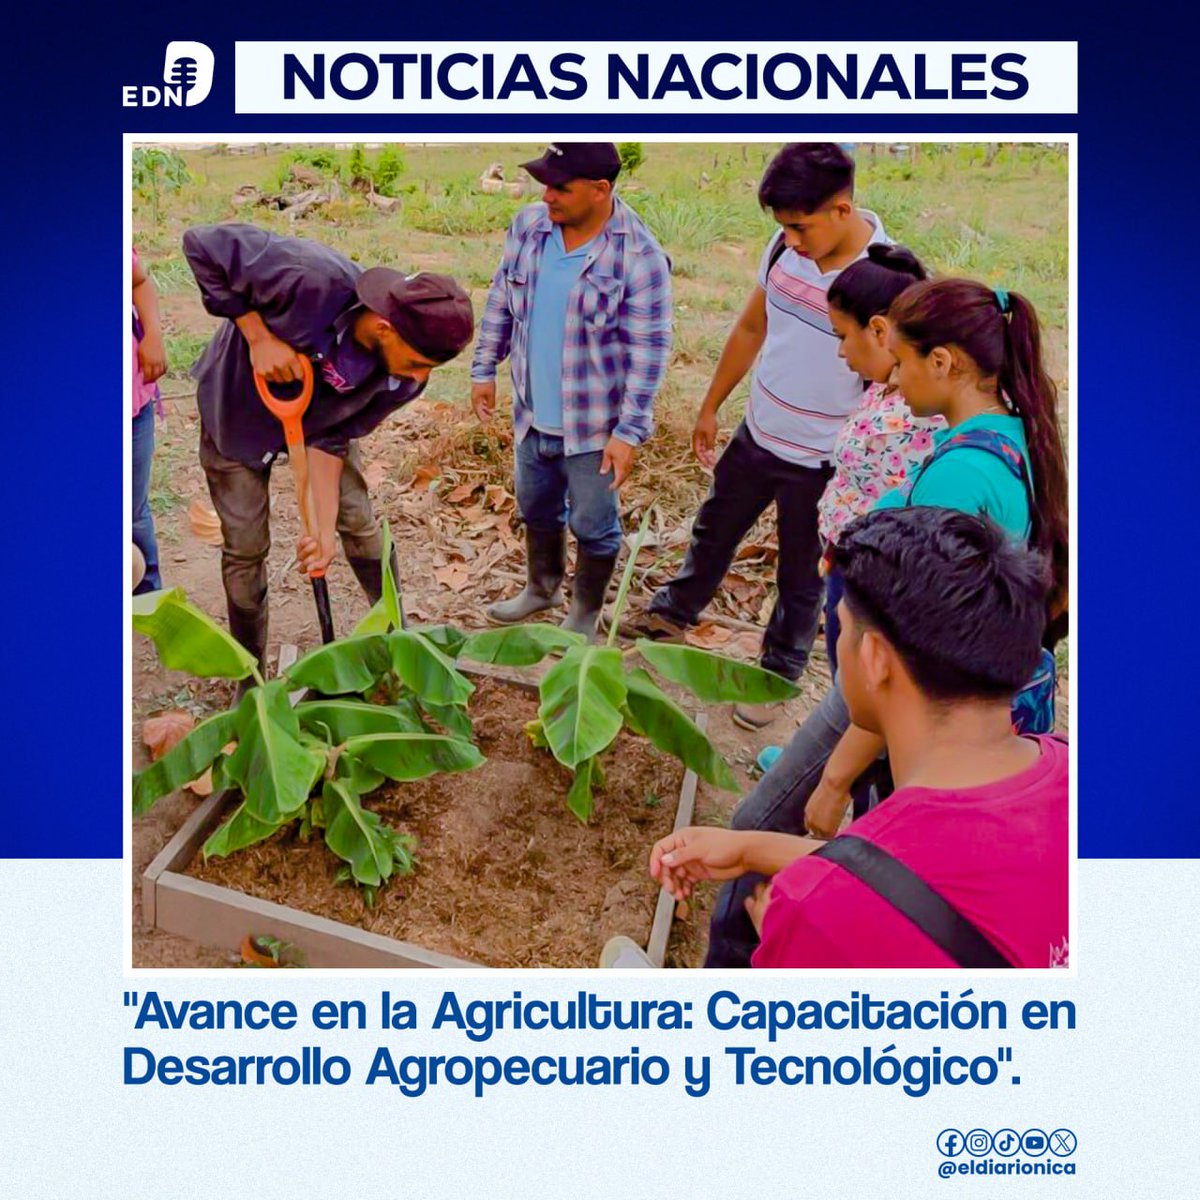 El Movimiento Ambientalista Guardabarranco desarrolla este año la promoción de los cursos que se imparten en las fincas de desarrollo de tecnologías agropecuarias y centros tecnológicos, en donde estudian centenares de jóvenes. #Nicaragua #14Mayo